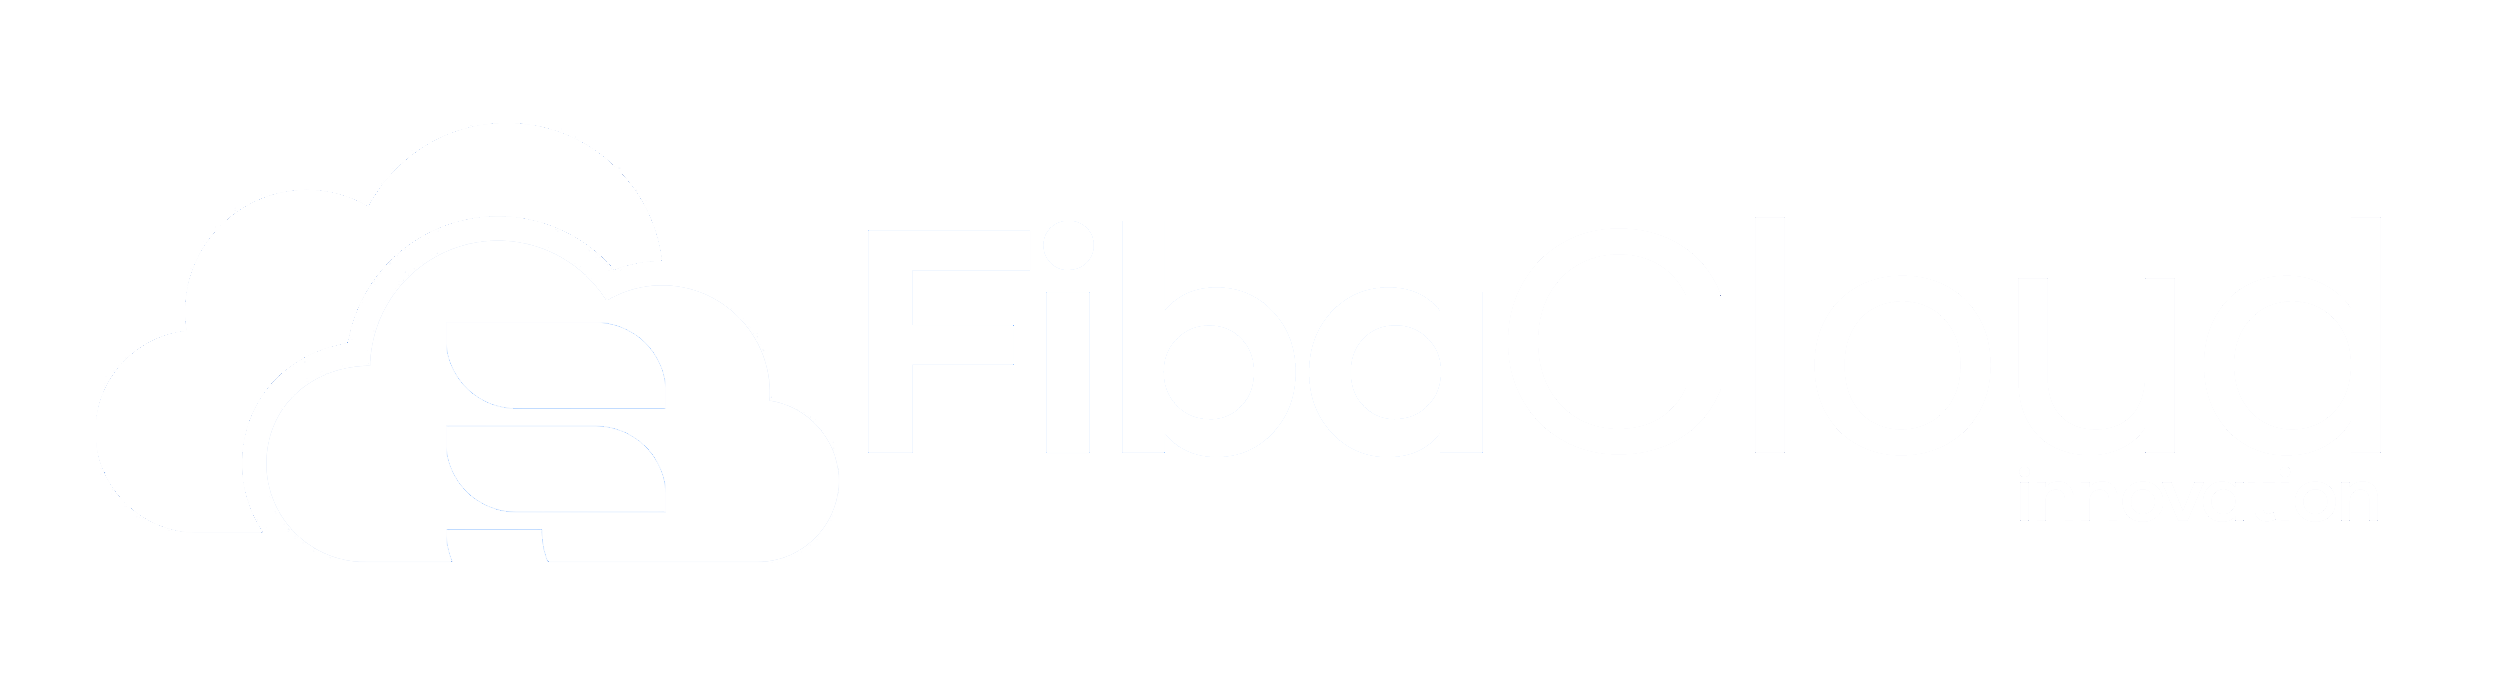 FibaCloud.com